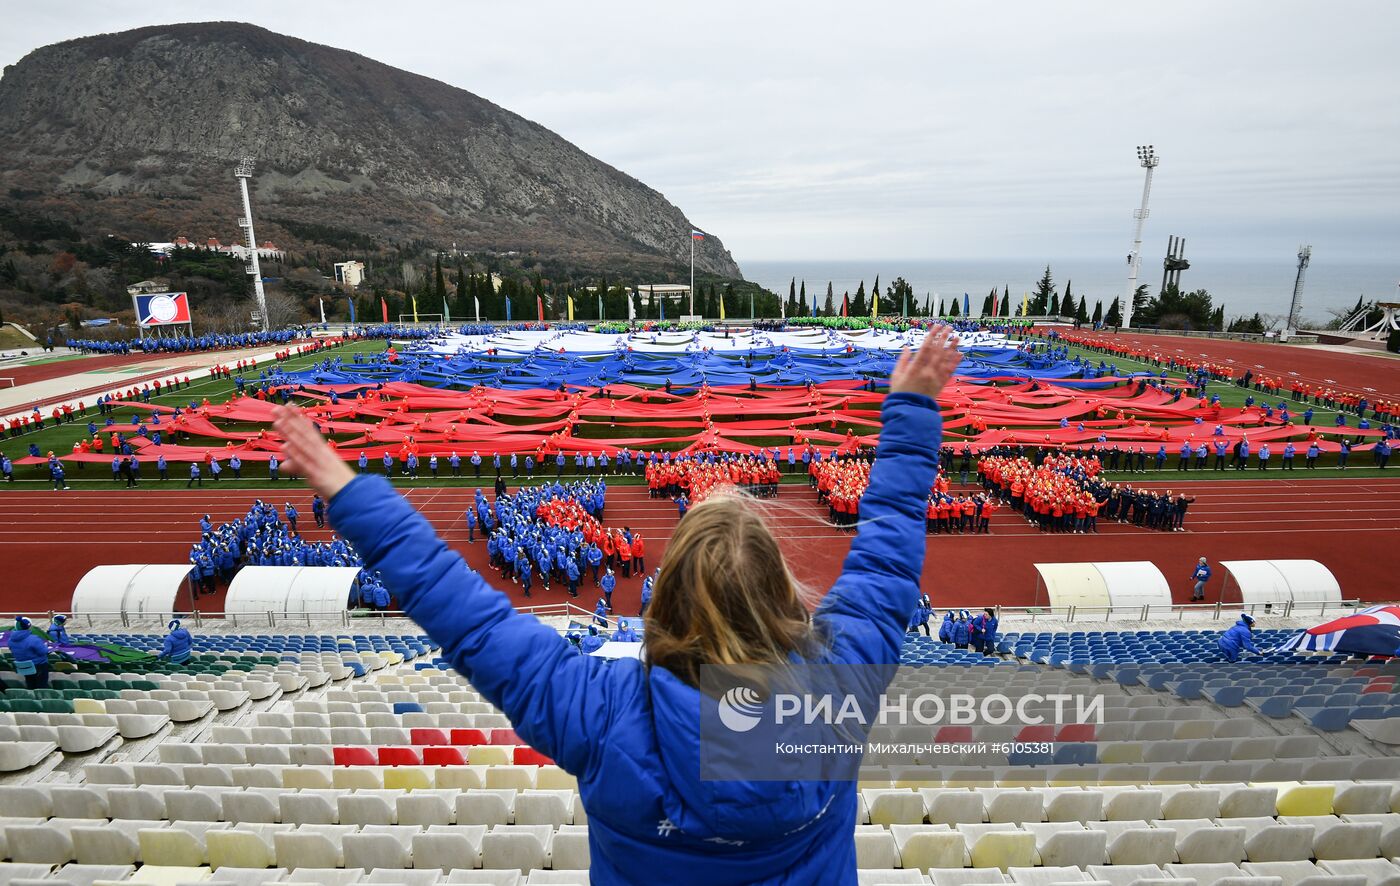 Гигантский флаг РФ в поддержку российских спортсменов развернули в "Артеке"